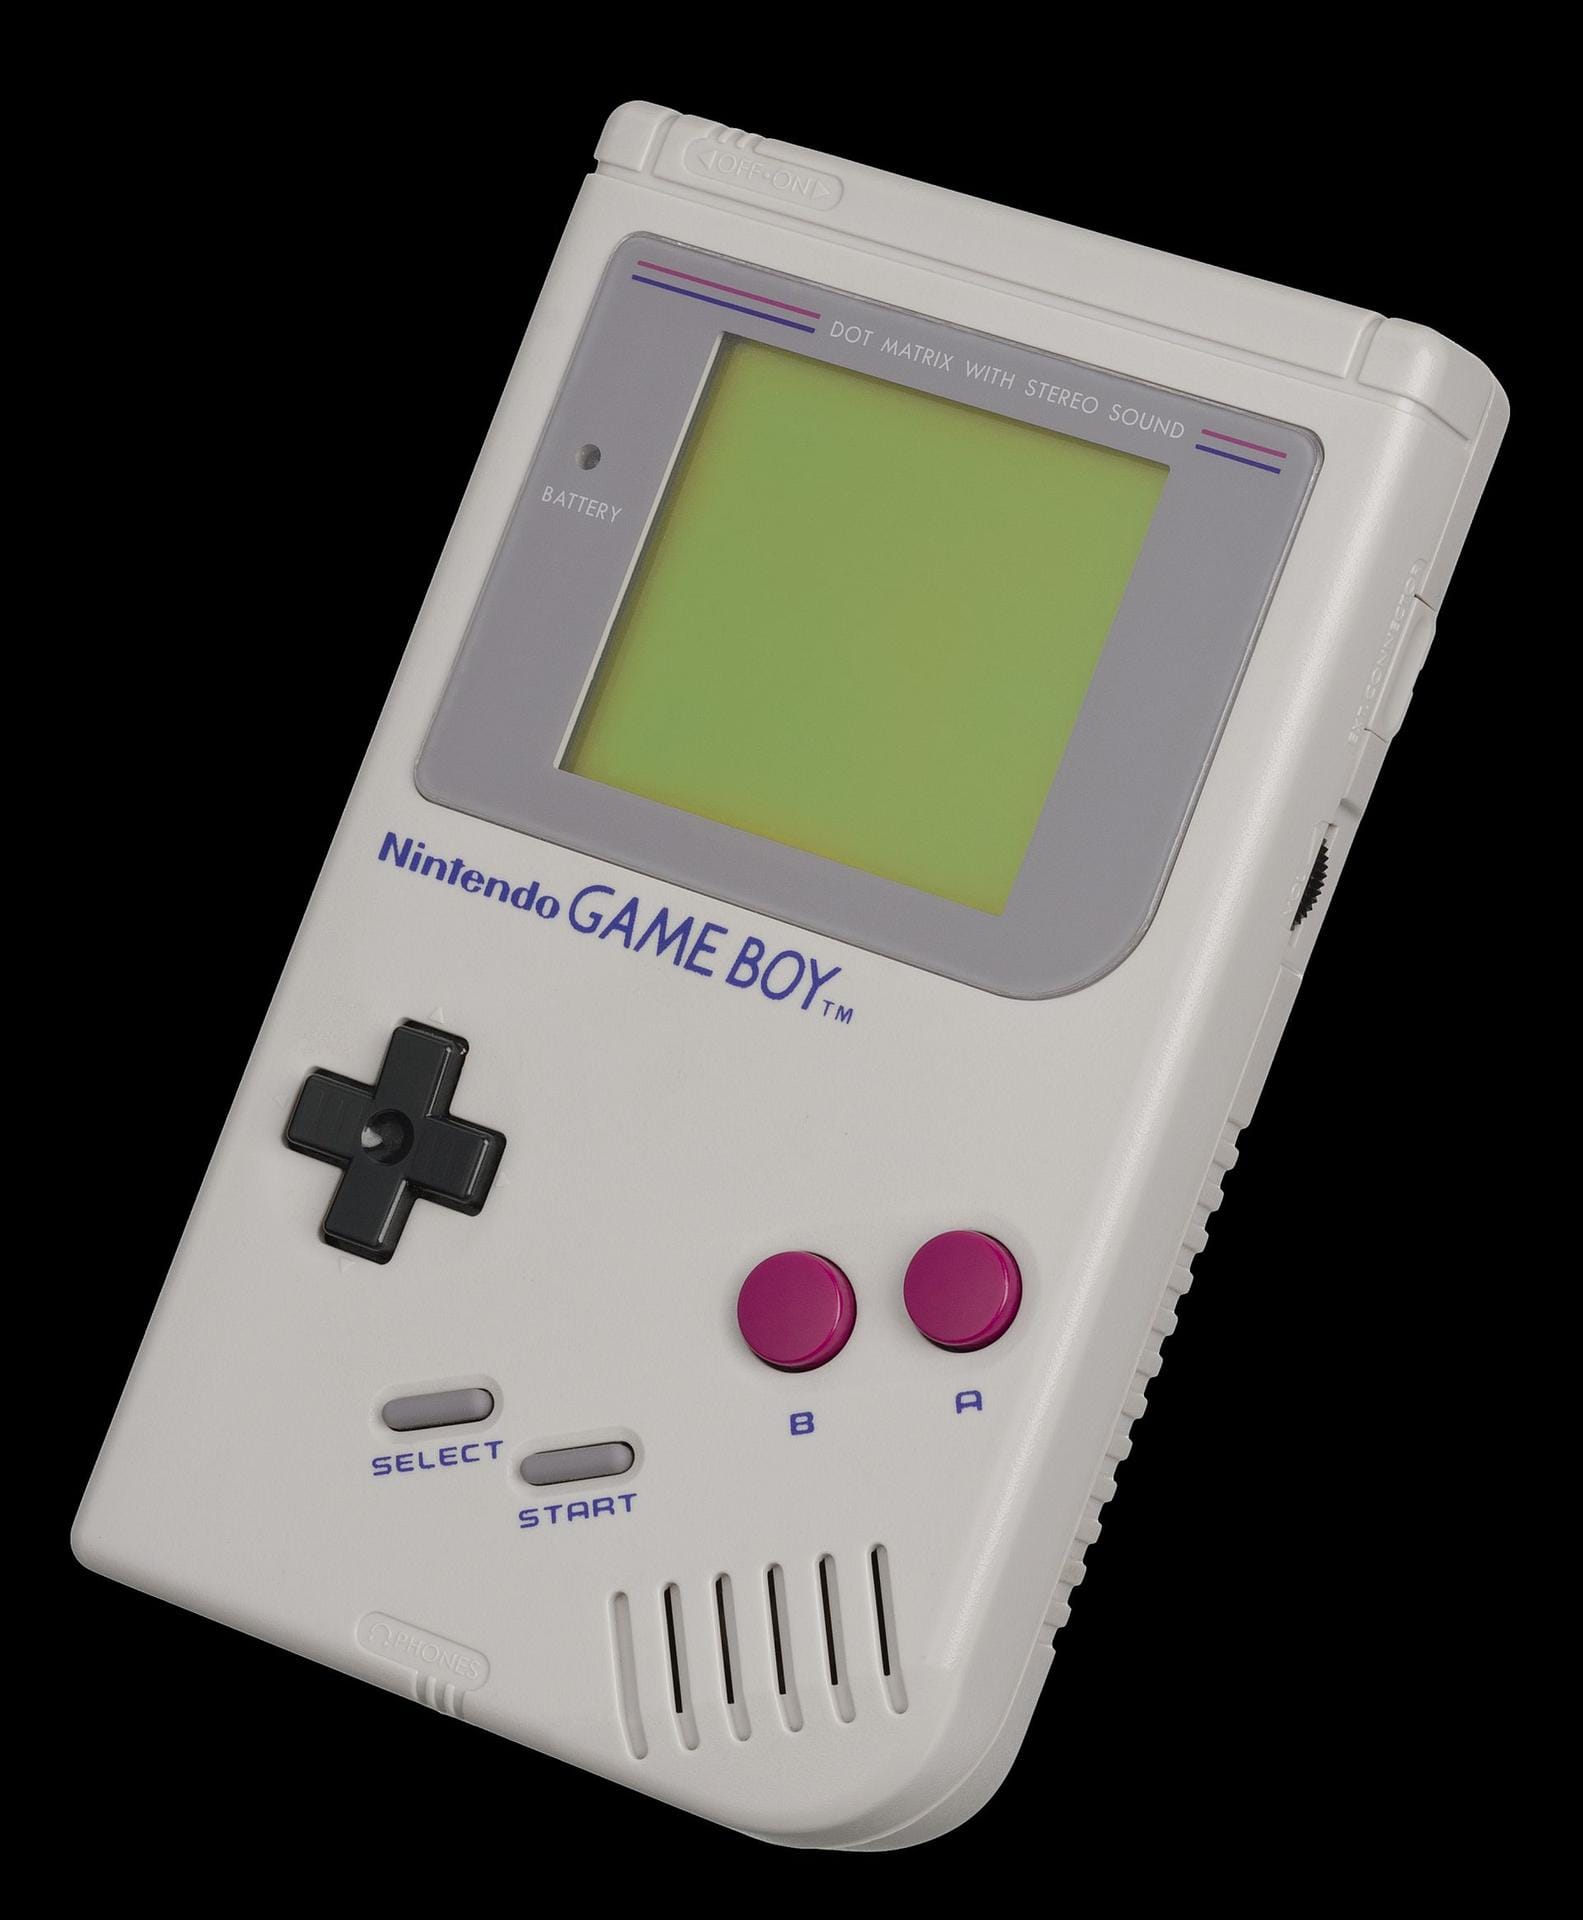 Der Nintendo Game Boy kam erstmals 1989 in die Läden und wurde millionenfach verkauft. Die ersten Modelle aus diesem Jahr erzielen inzwischen Preise um 1000 Euro.